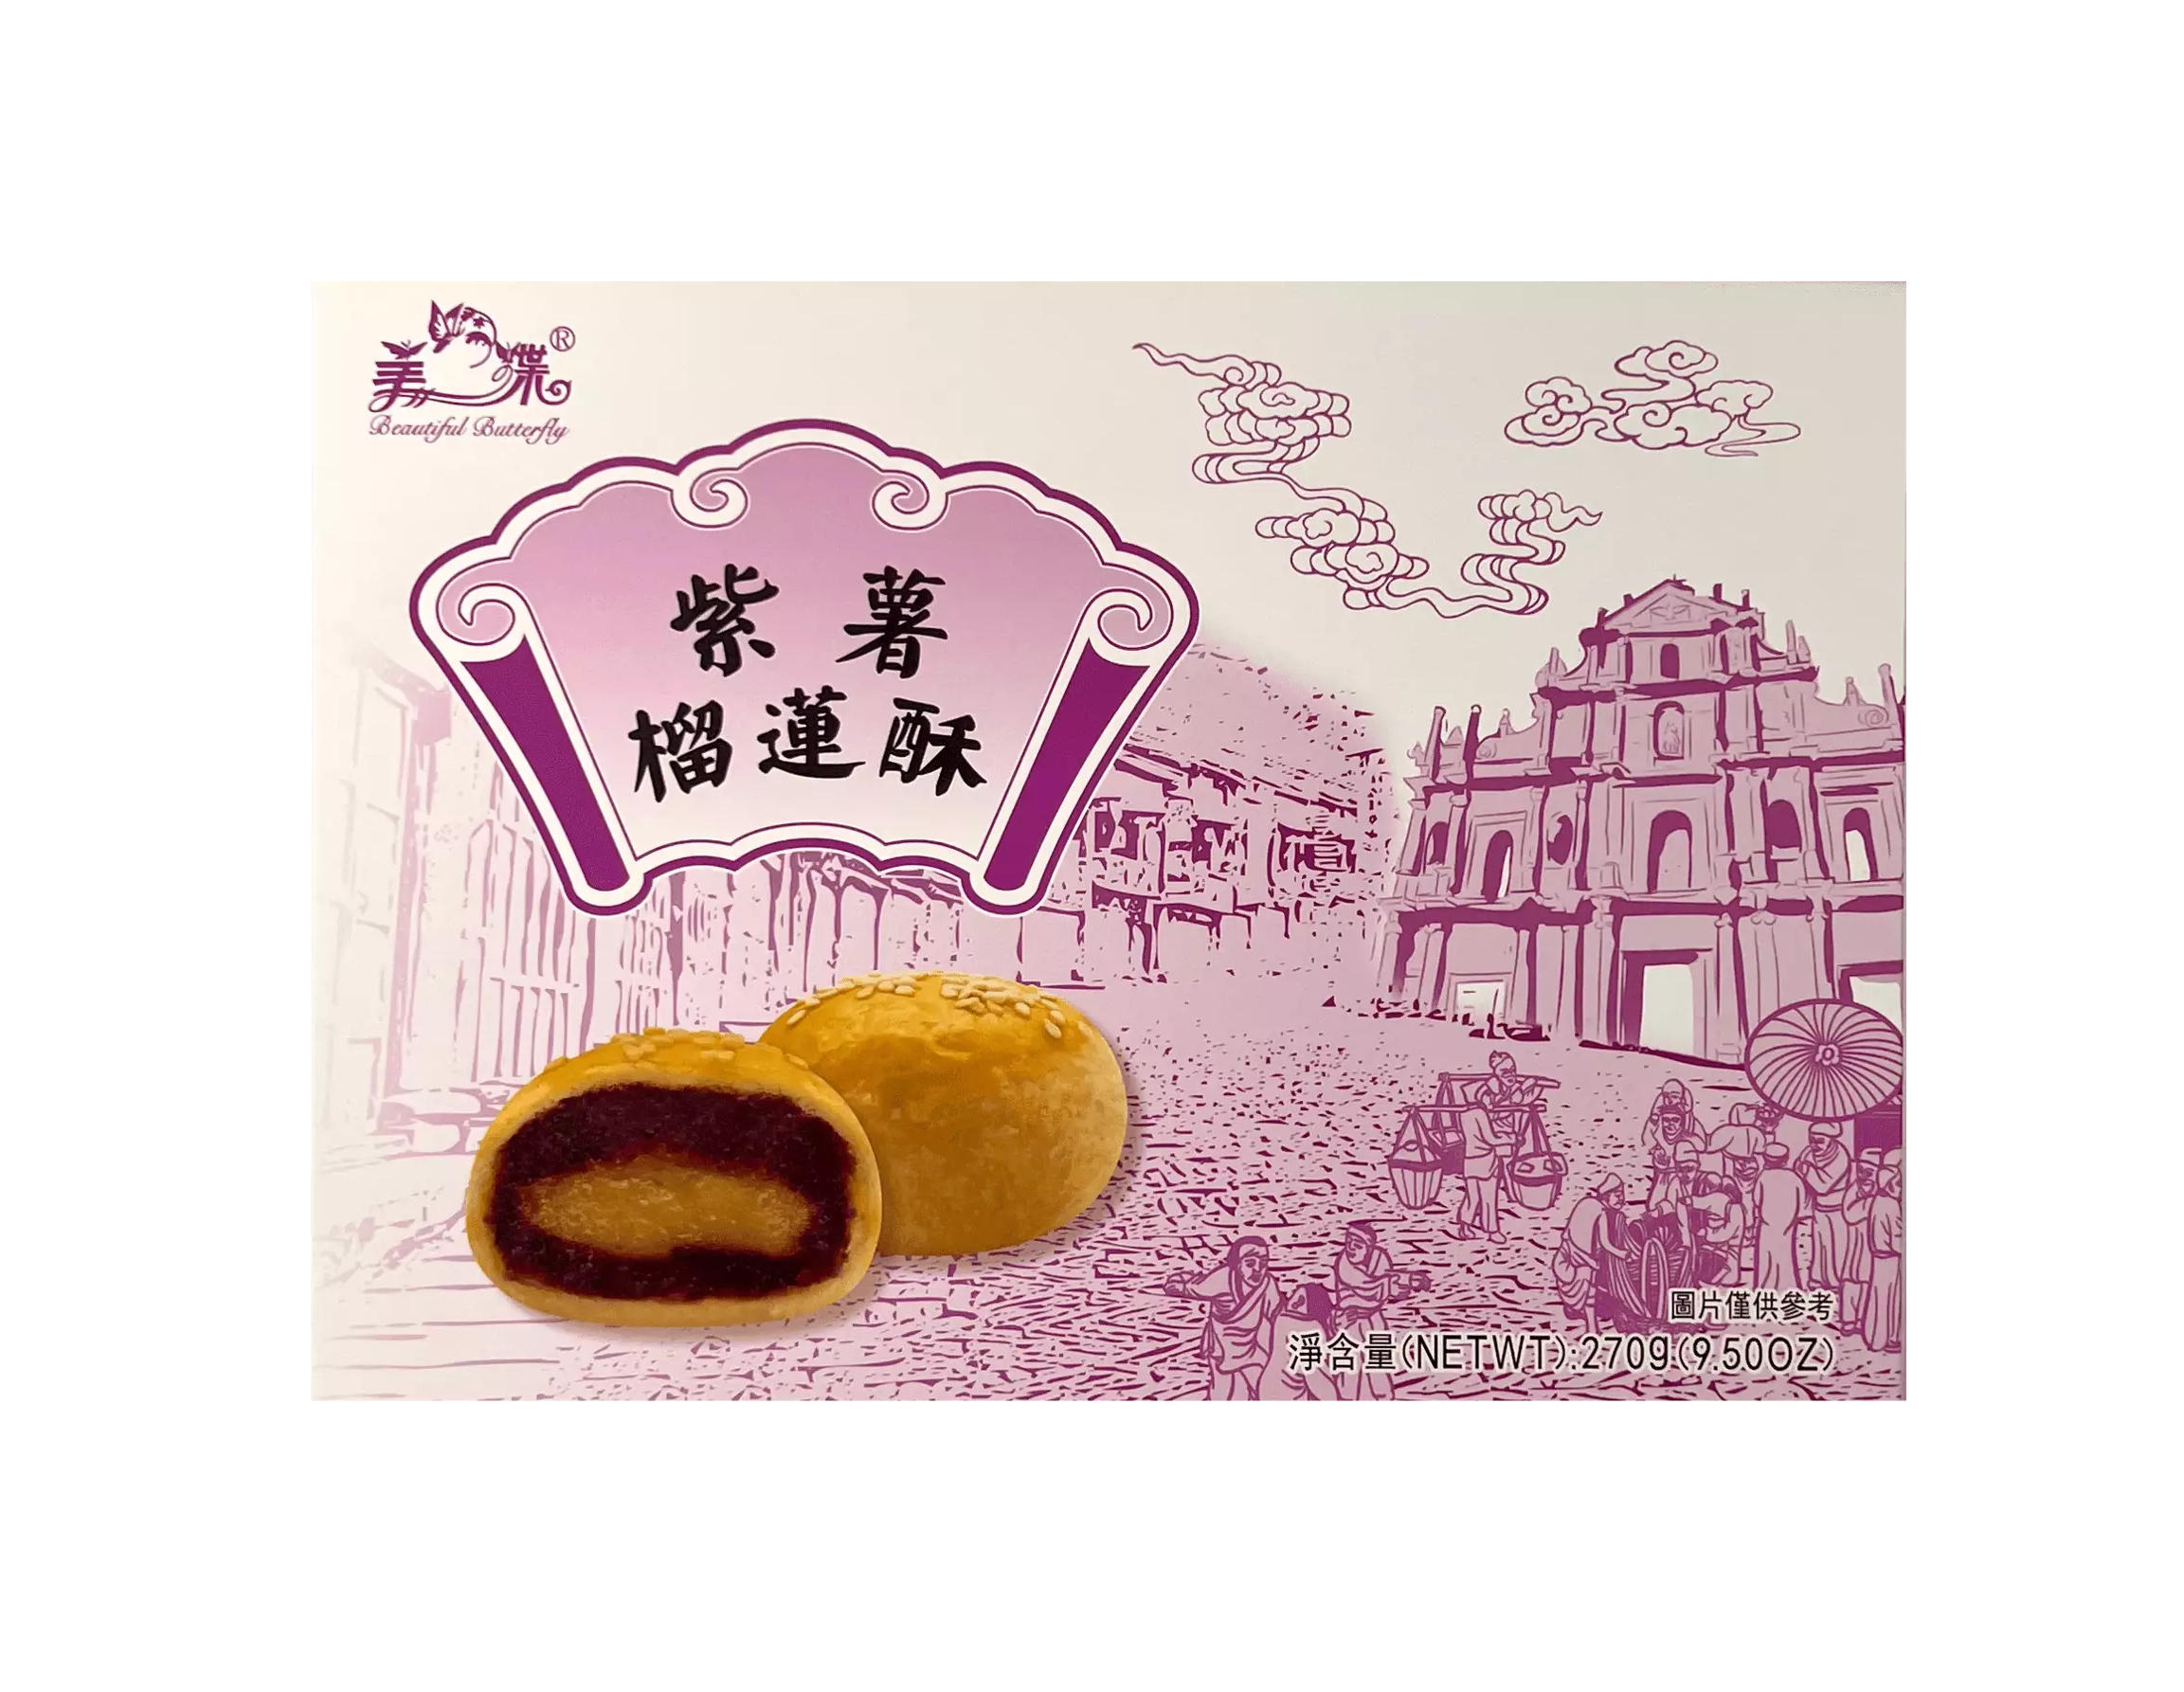 紫薯 榴莲酥 270g 美蝶 中国